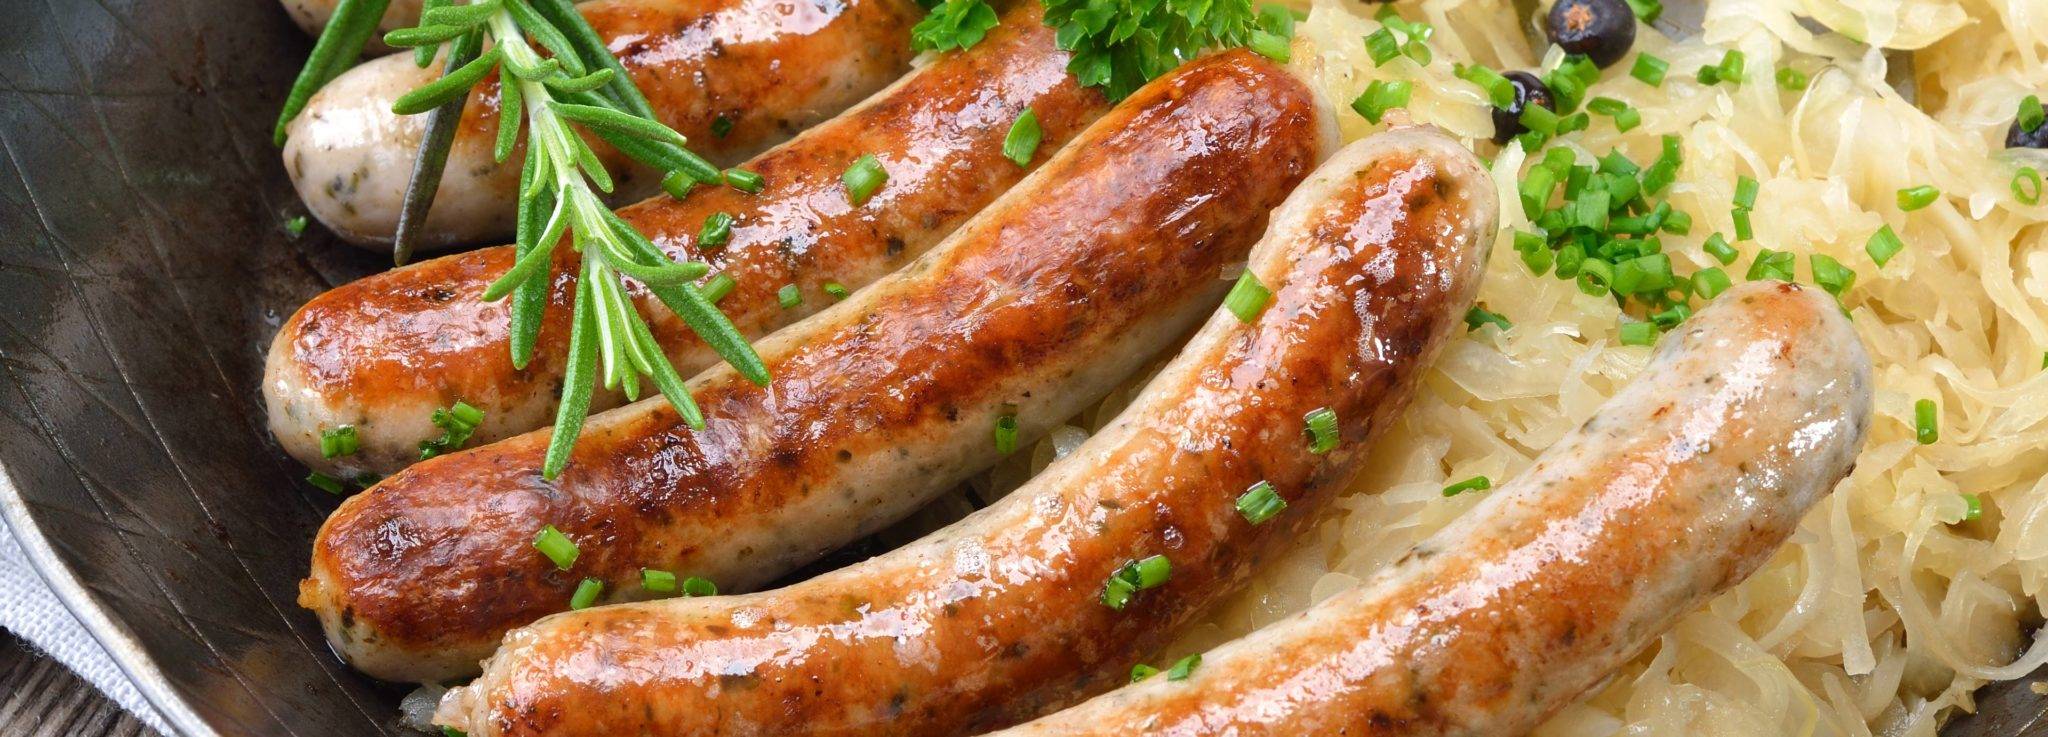 Немецкие колбаски: топ-10 видов, что попробовать, названия с фото